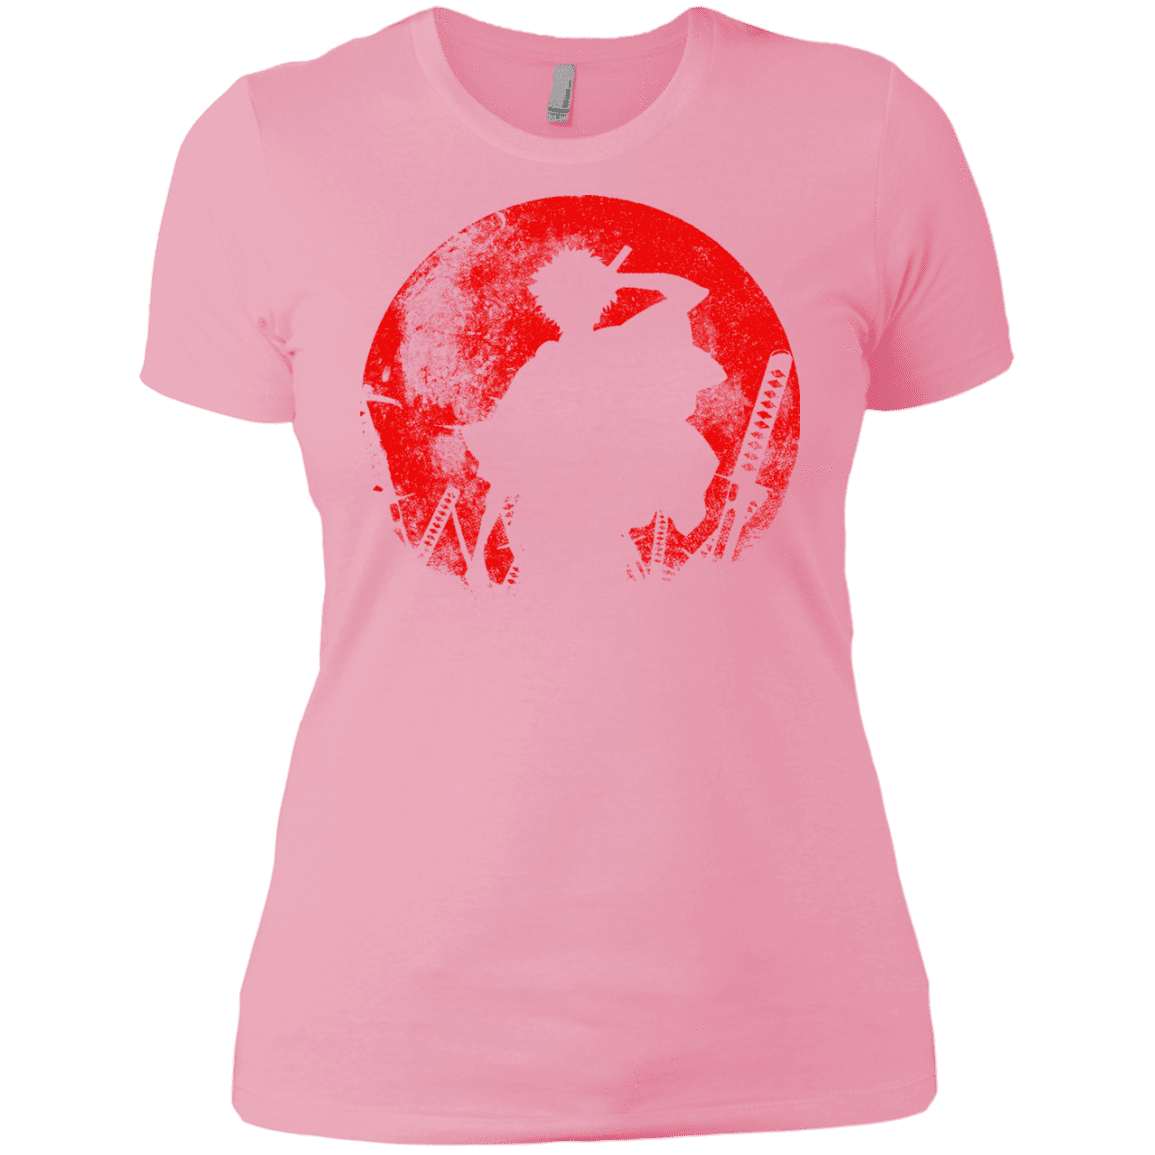 T-Shirts Light Pink / X-Small Samurai Swords Women's Premium T-Shirt